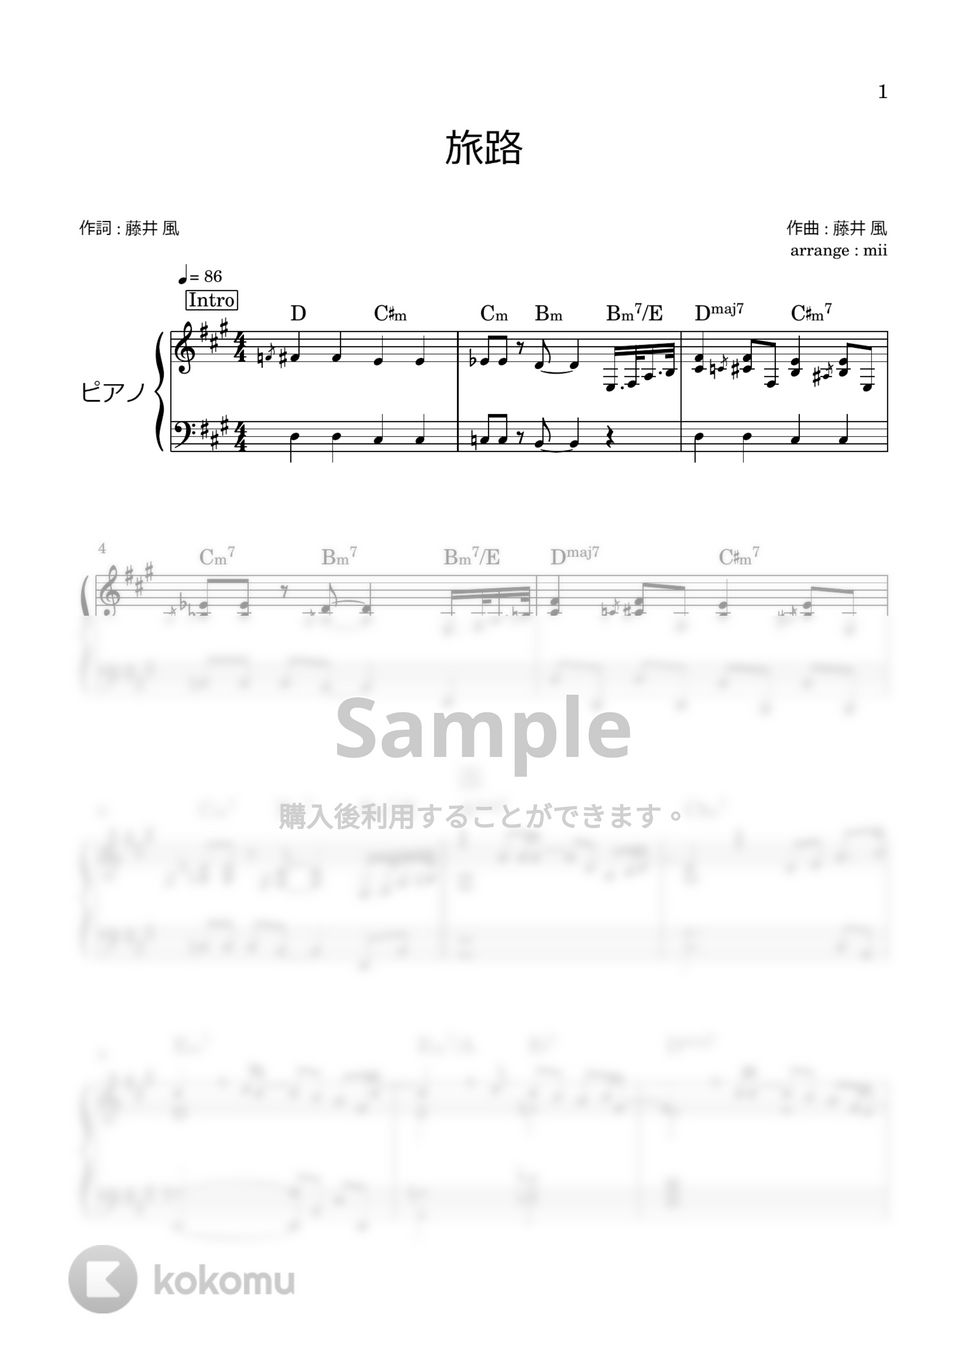 藤井風 - 旅路 (にじいろカルテ 主題歌) by miiの楽譜棚